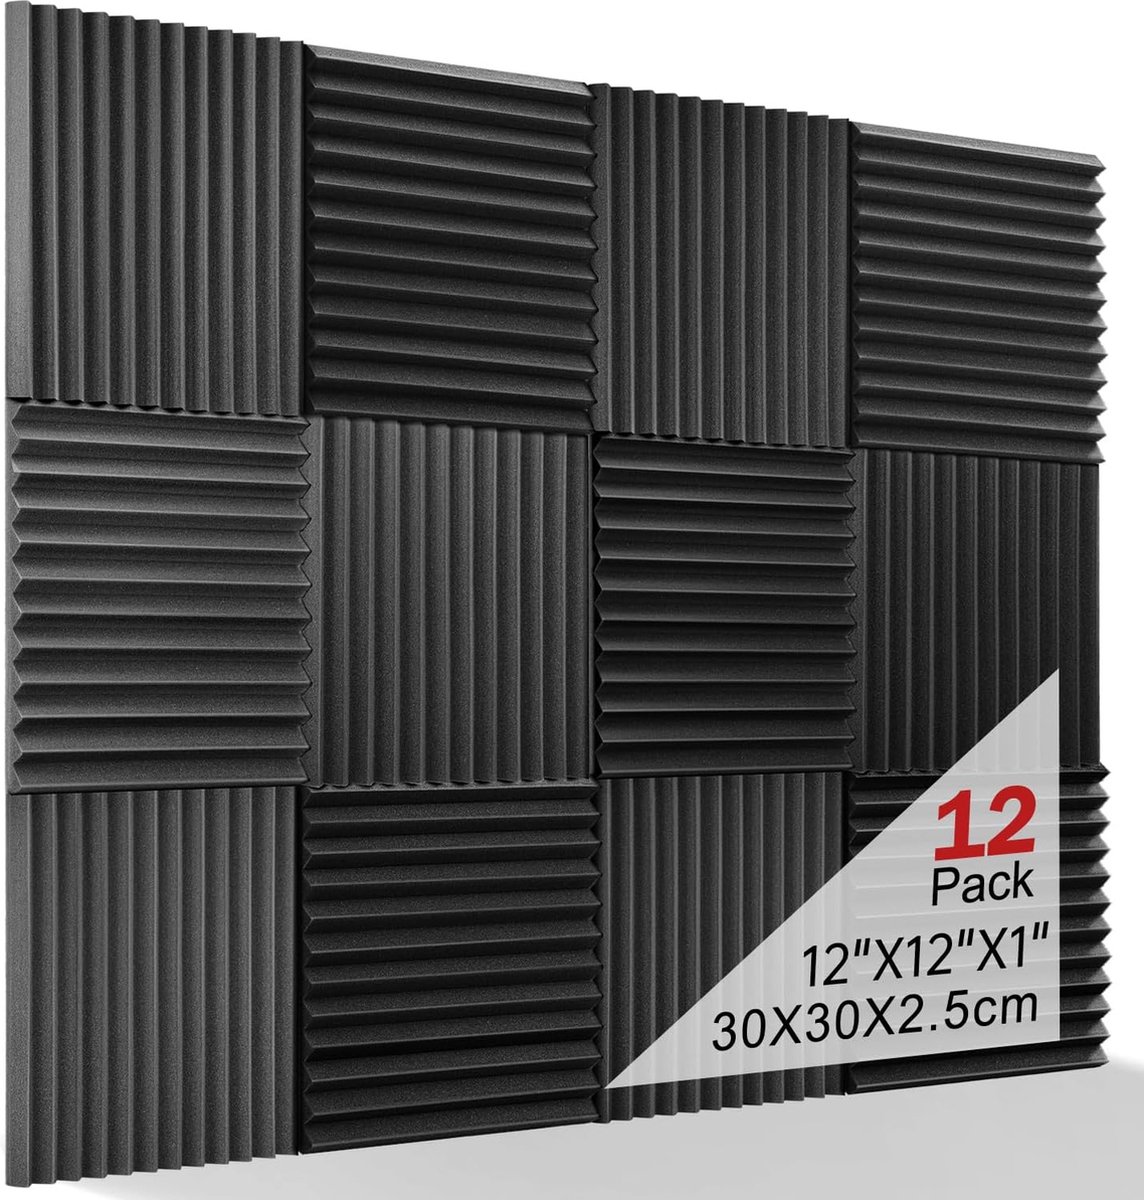 Geluidsabsorberend akoestisch schuim, 12 stuks zwart akoestisch schuim voor podcasts, opnamestudio's, kantoren, akoestische schuimmat （30 x 30 x 2,5 cm） (zwart)